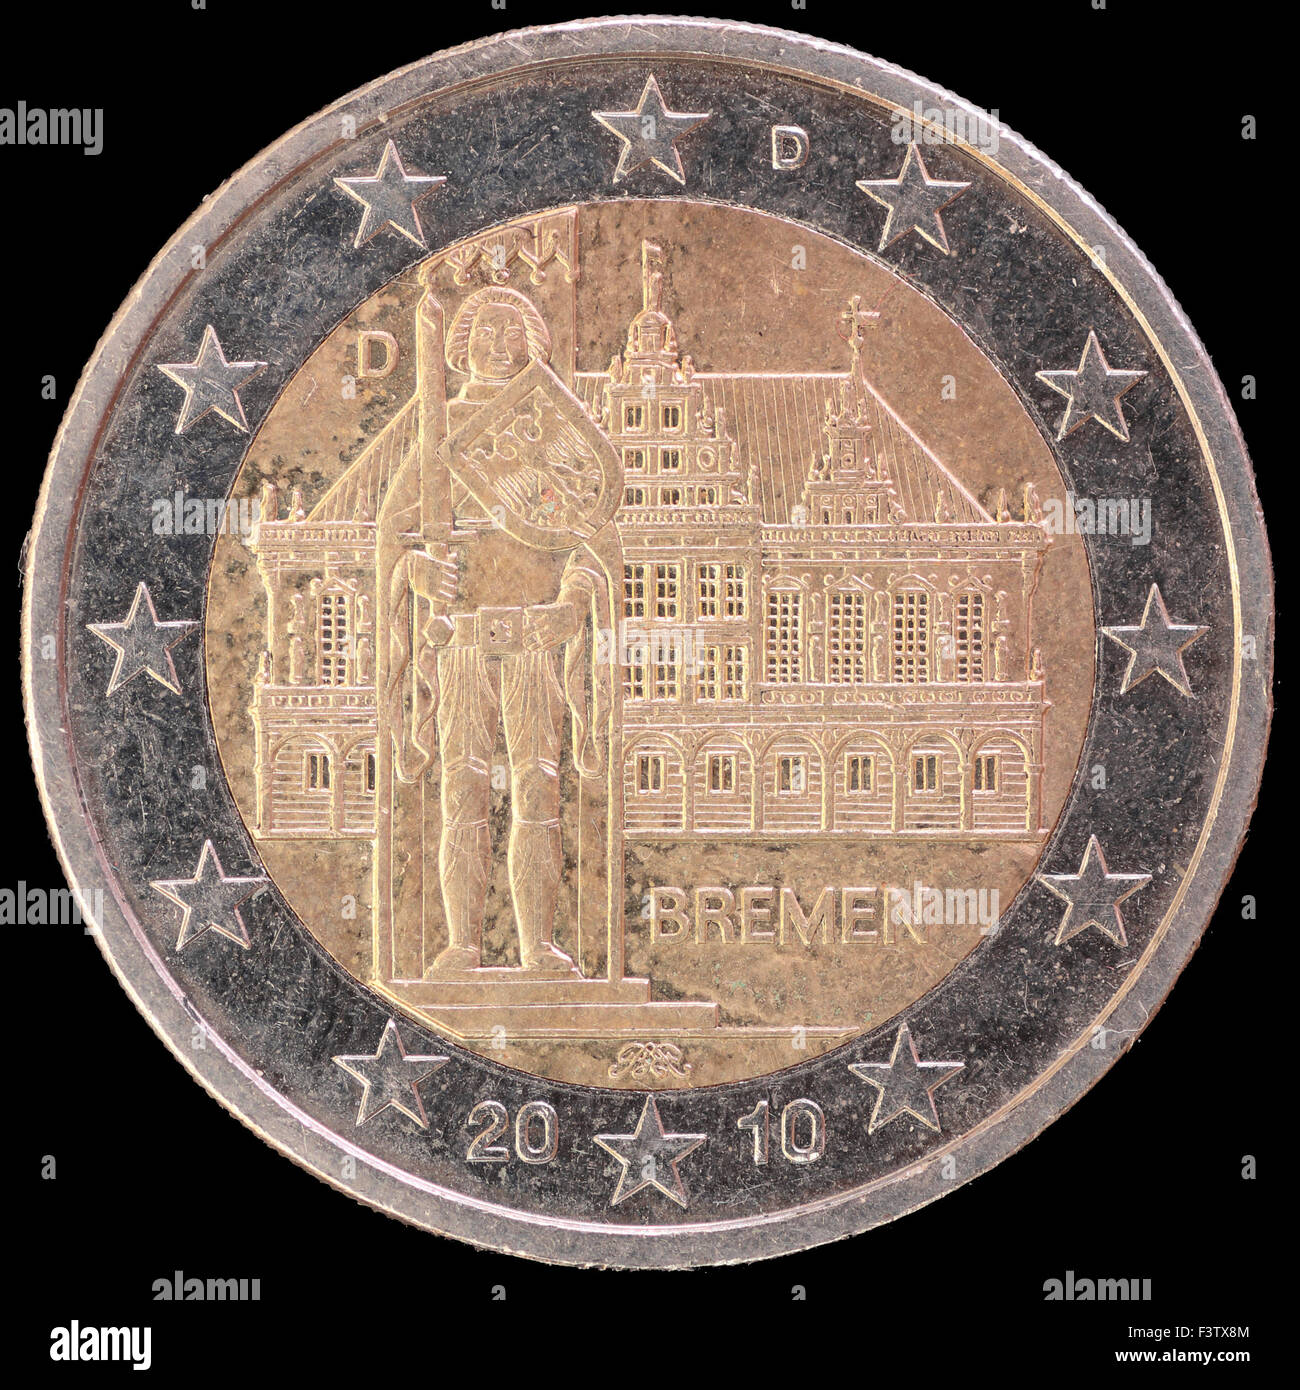 Ceremonia conmemorativa distribuyó dos monedas de euro emitidos por Alemania en 2010 y la celebración del estado federado de Bremen Foto de stock